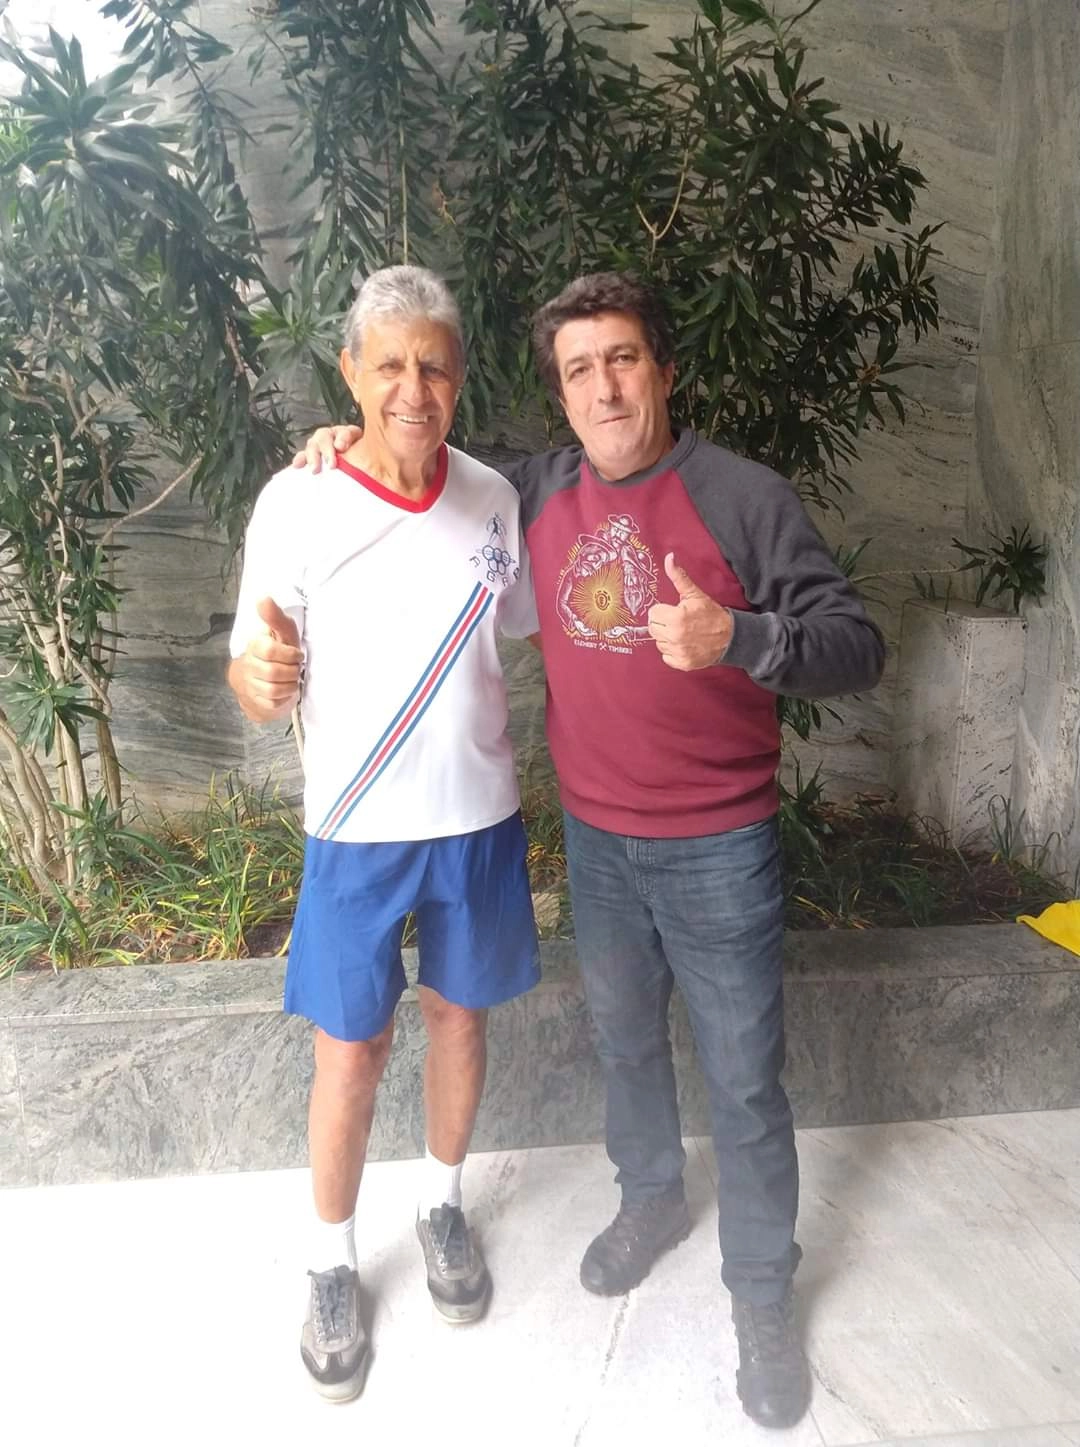 Wilson Piazza e Carlos Alberto Spina (ex-Matsubara) em dezembro de 2019, em Belo Horizonte. Foto: arquivo pessoal de Carlos Alberto Spina